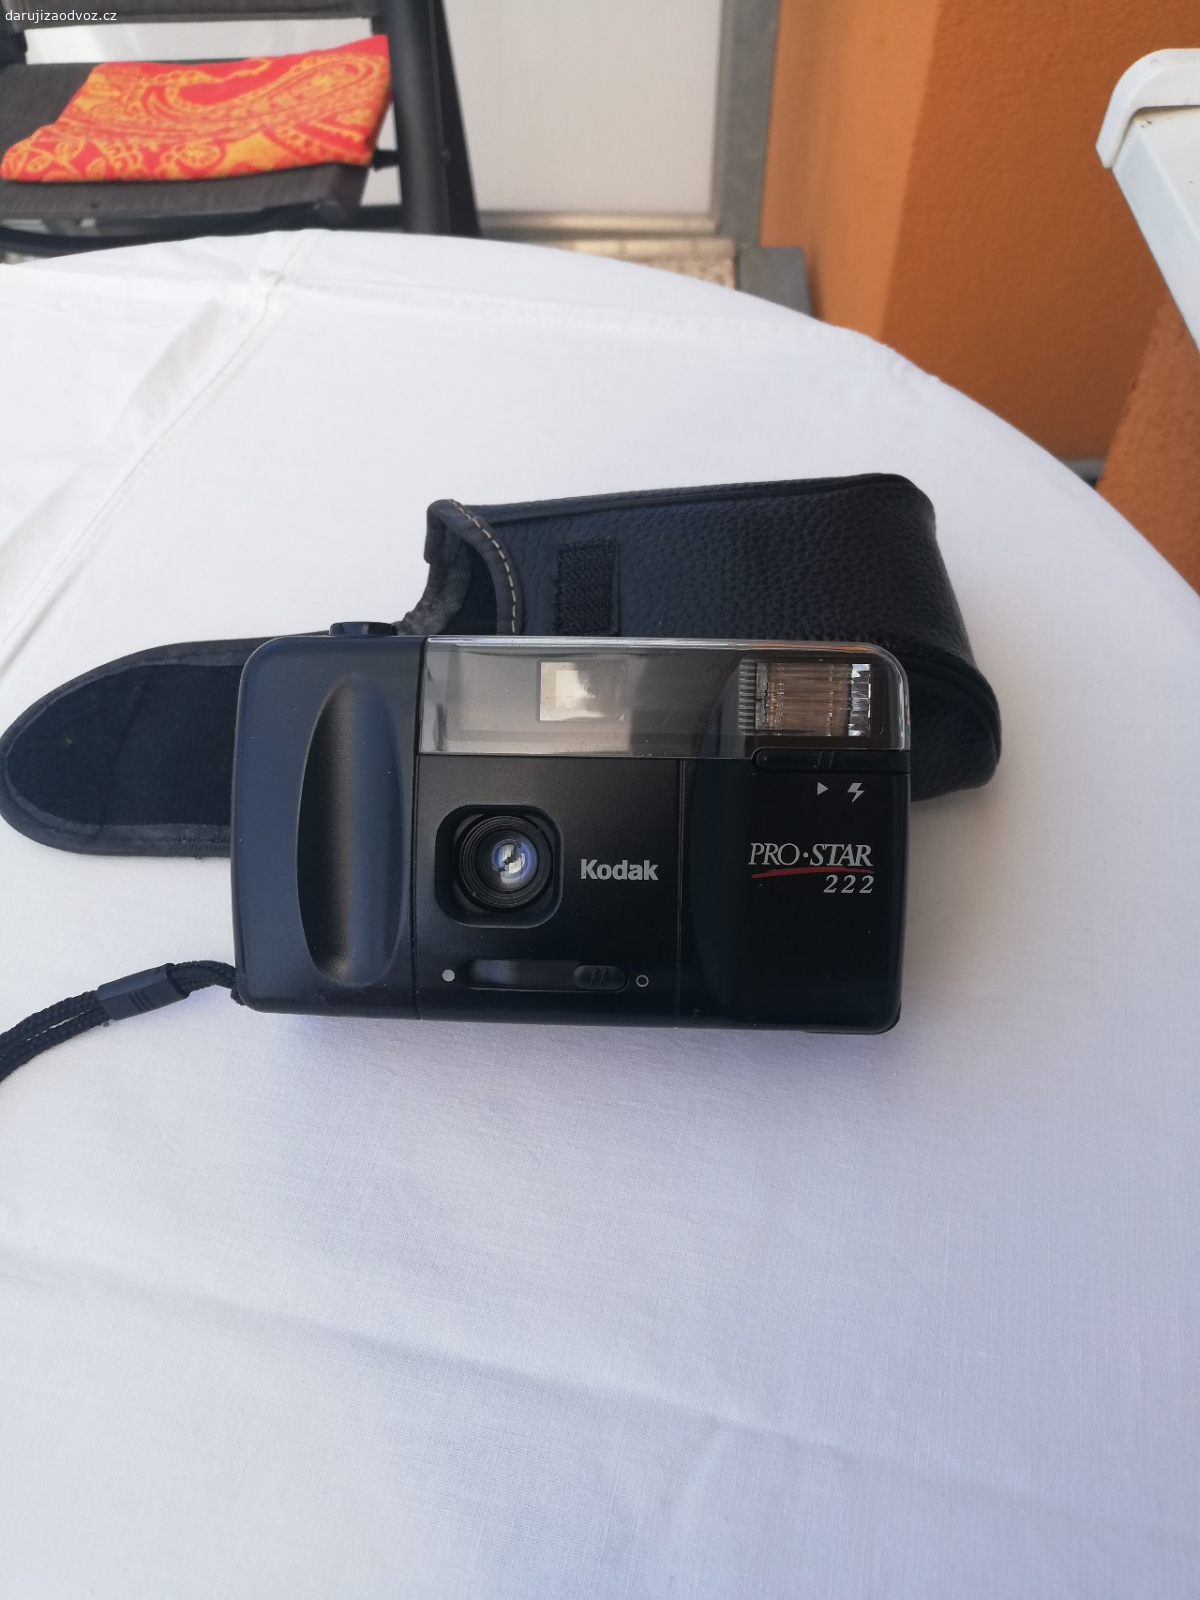 Fotoaparát. Daruji fotoaparát Kodak PRO STAR 222 na kinofilm. Funkční, již nepoužívaný.